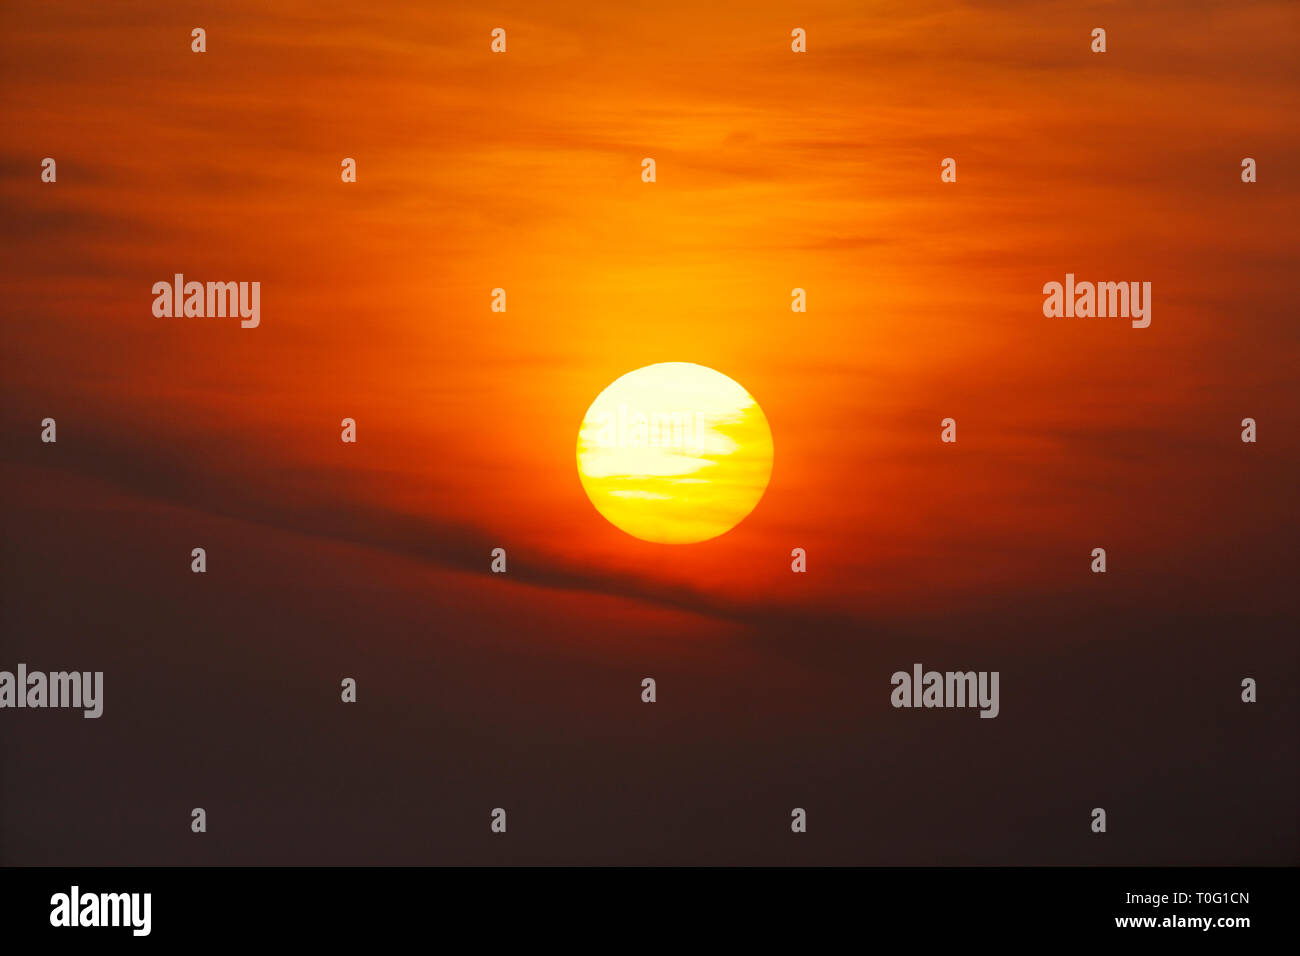 Sonnenuntergang Himmel Braun vom Wind verwehtes Sahara Staub in der Atmosphäre, es gibt einige Sonnenflecken sichtbar auf der Oberfläche der Sonne Stockfoto